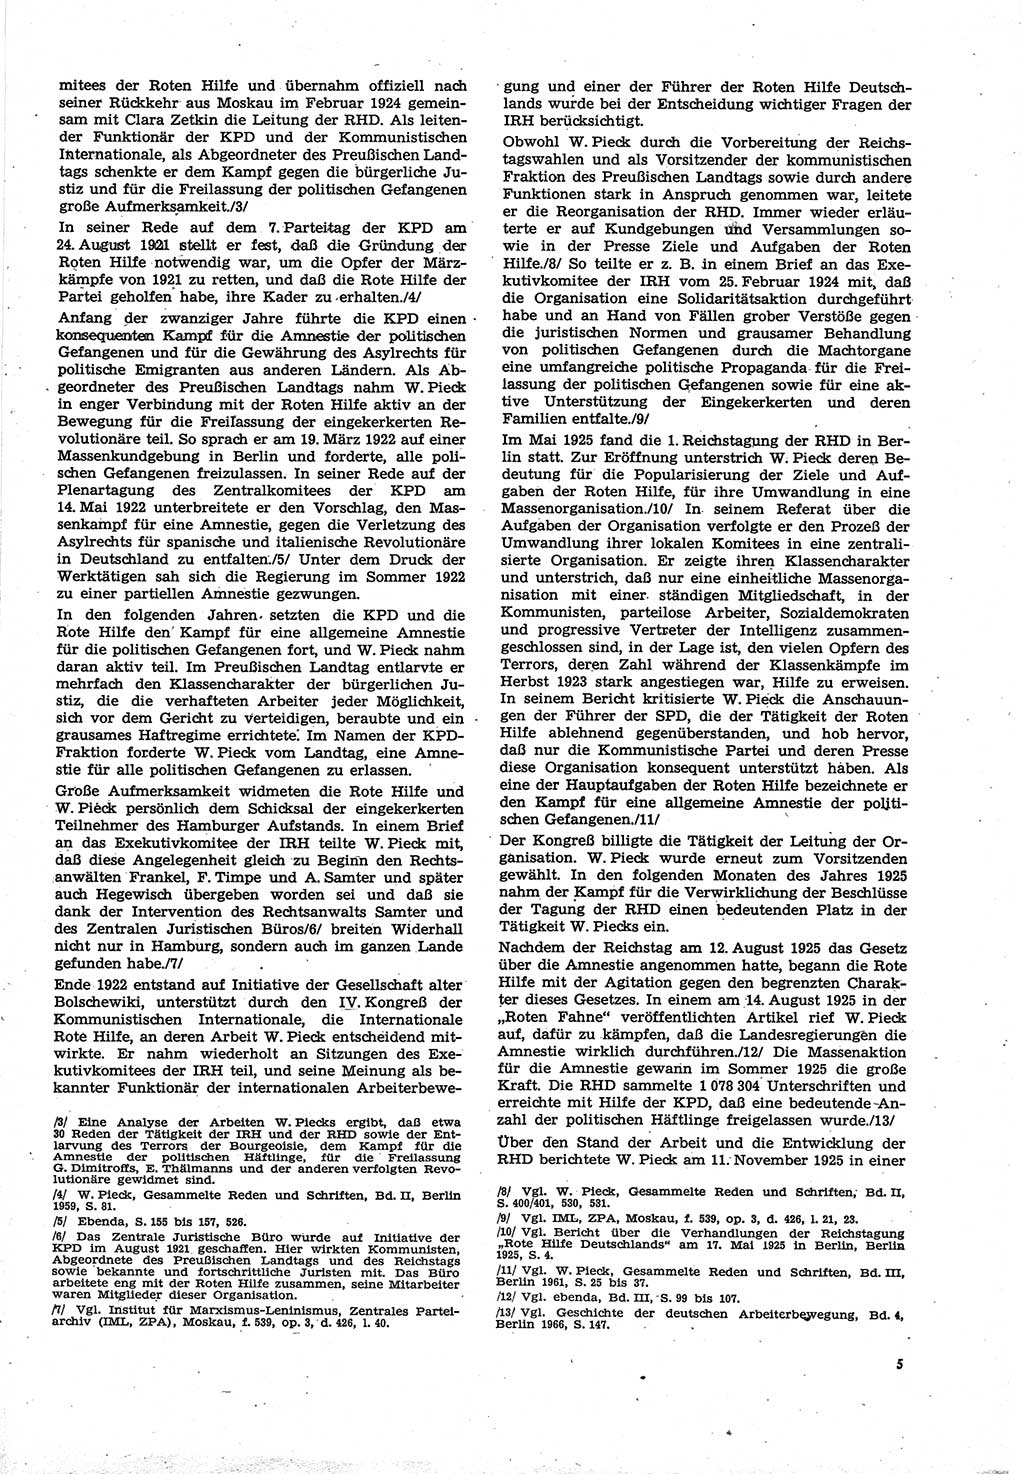 Neue Justiz (NJ), Zeitschrift für Recht und Rechtswissenschaft [Deutsche Demokratische Republik (DDR)], 30. Jahrgang 1976, Seite 5 (NJ DDR 1976, S. 5)